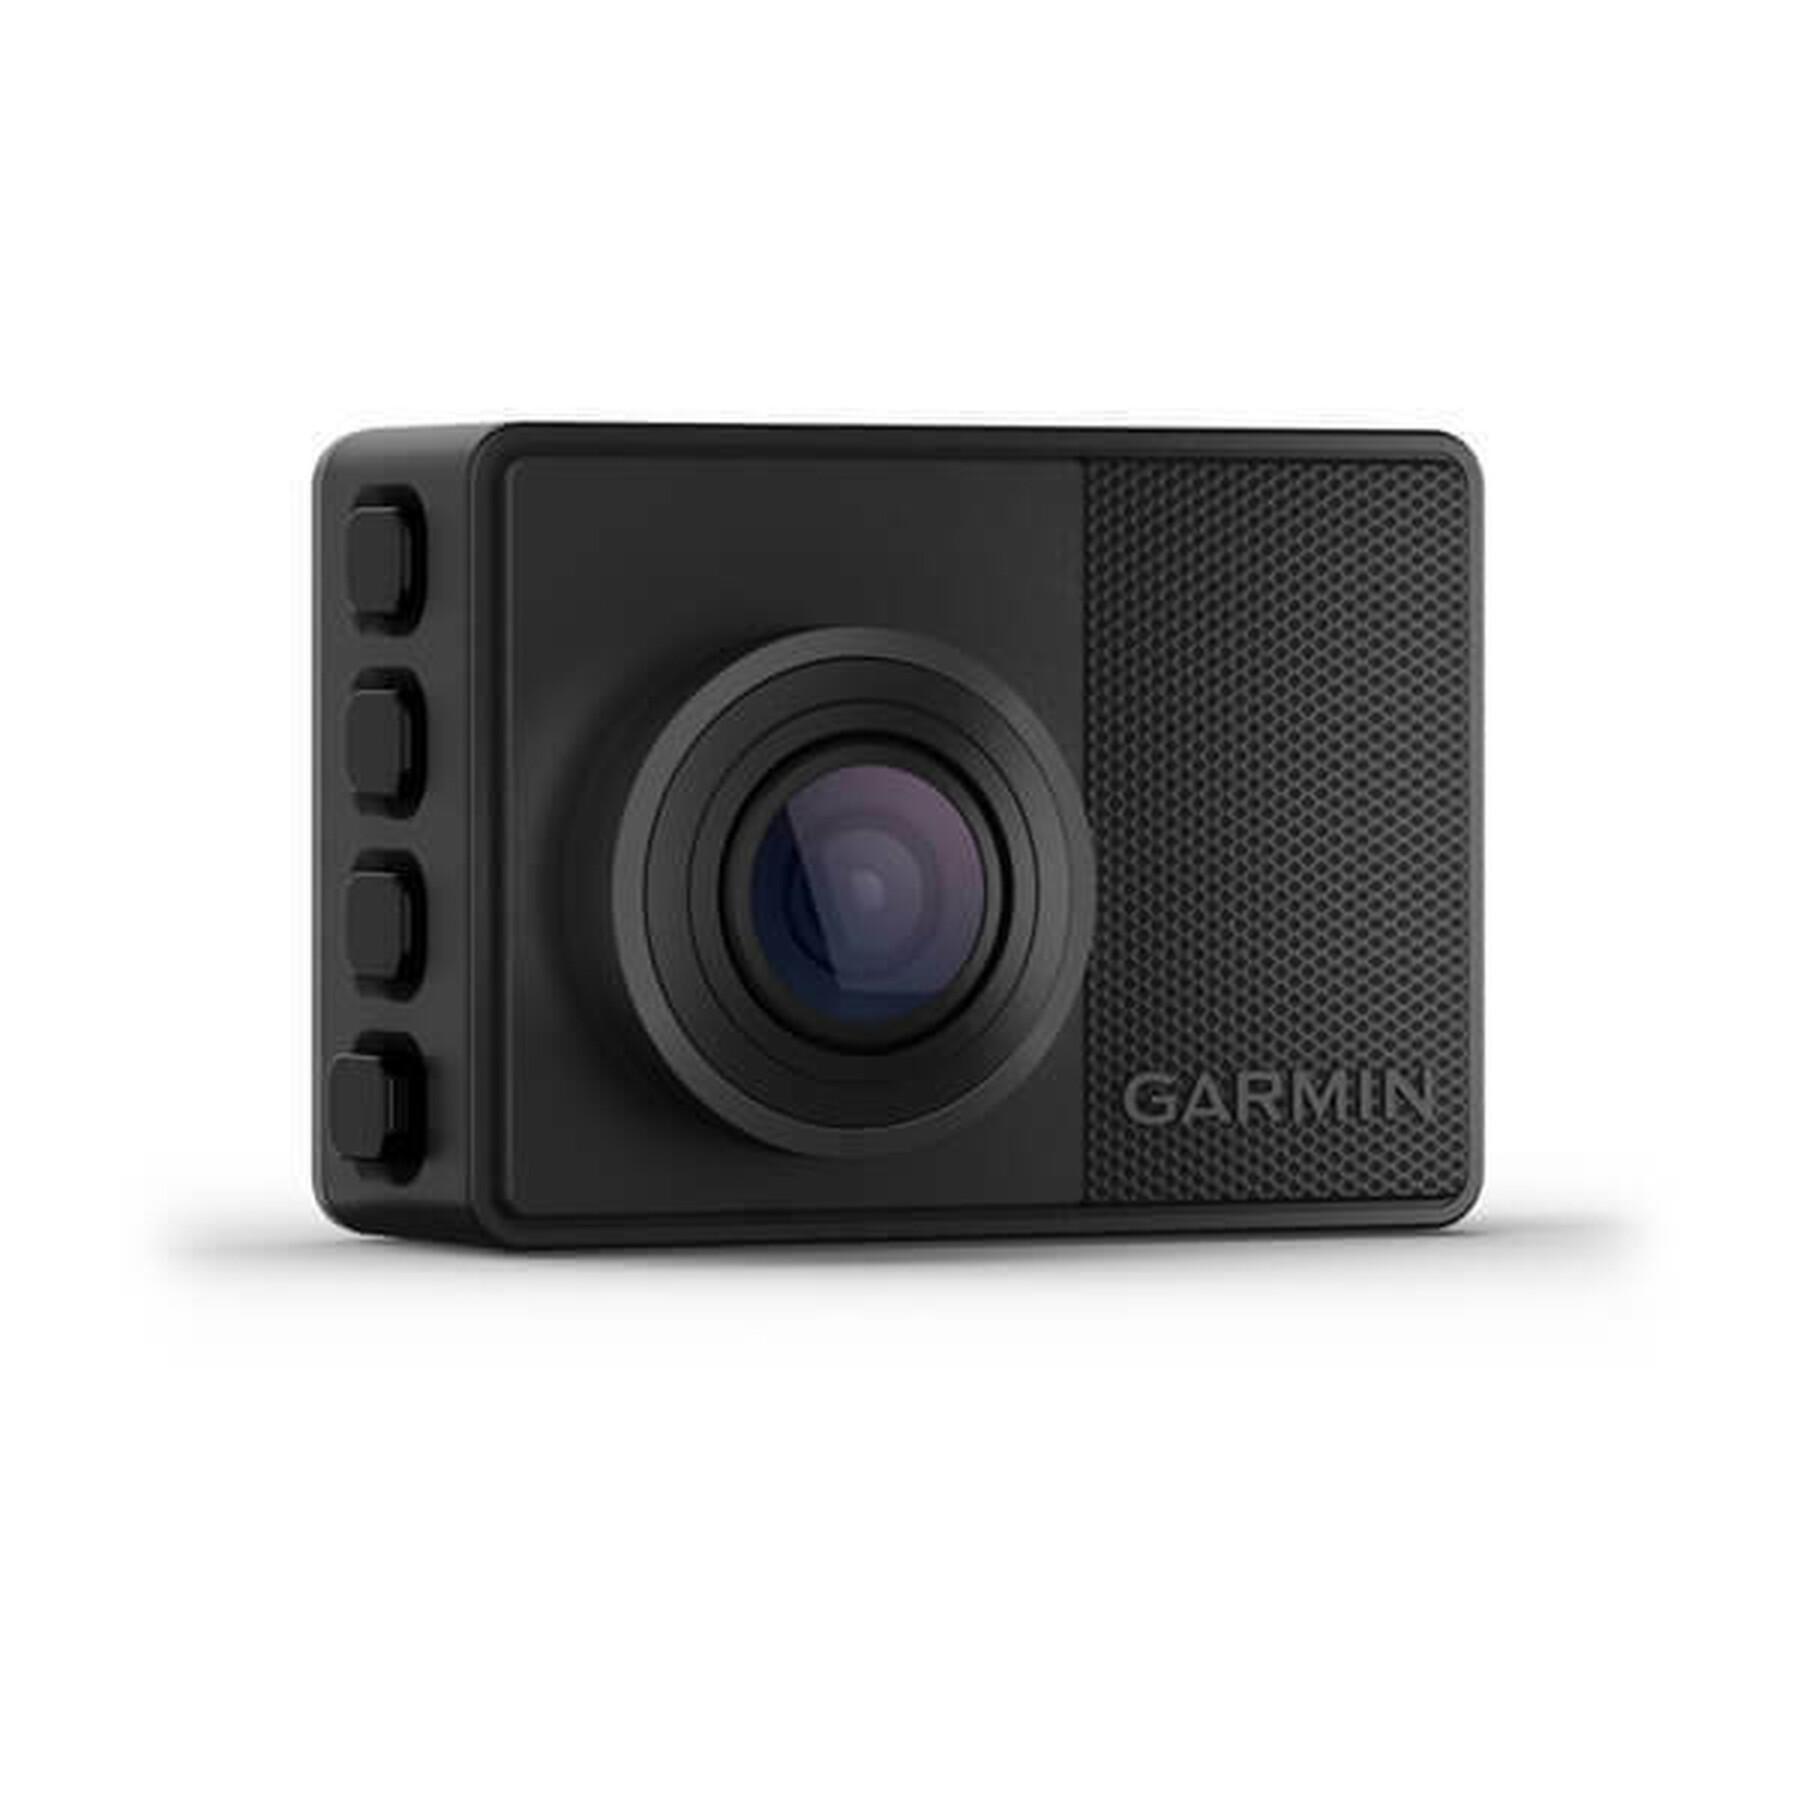 Eingebaute Kamera Garmin 67w